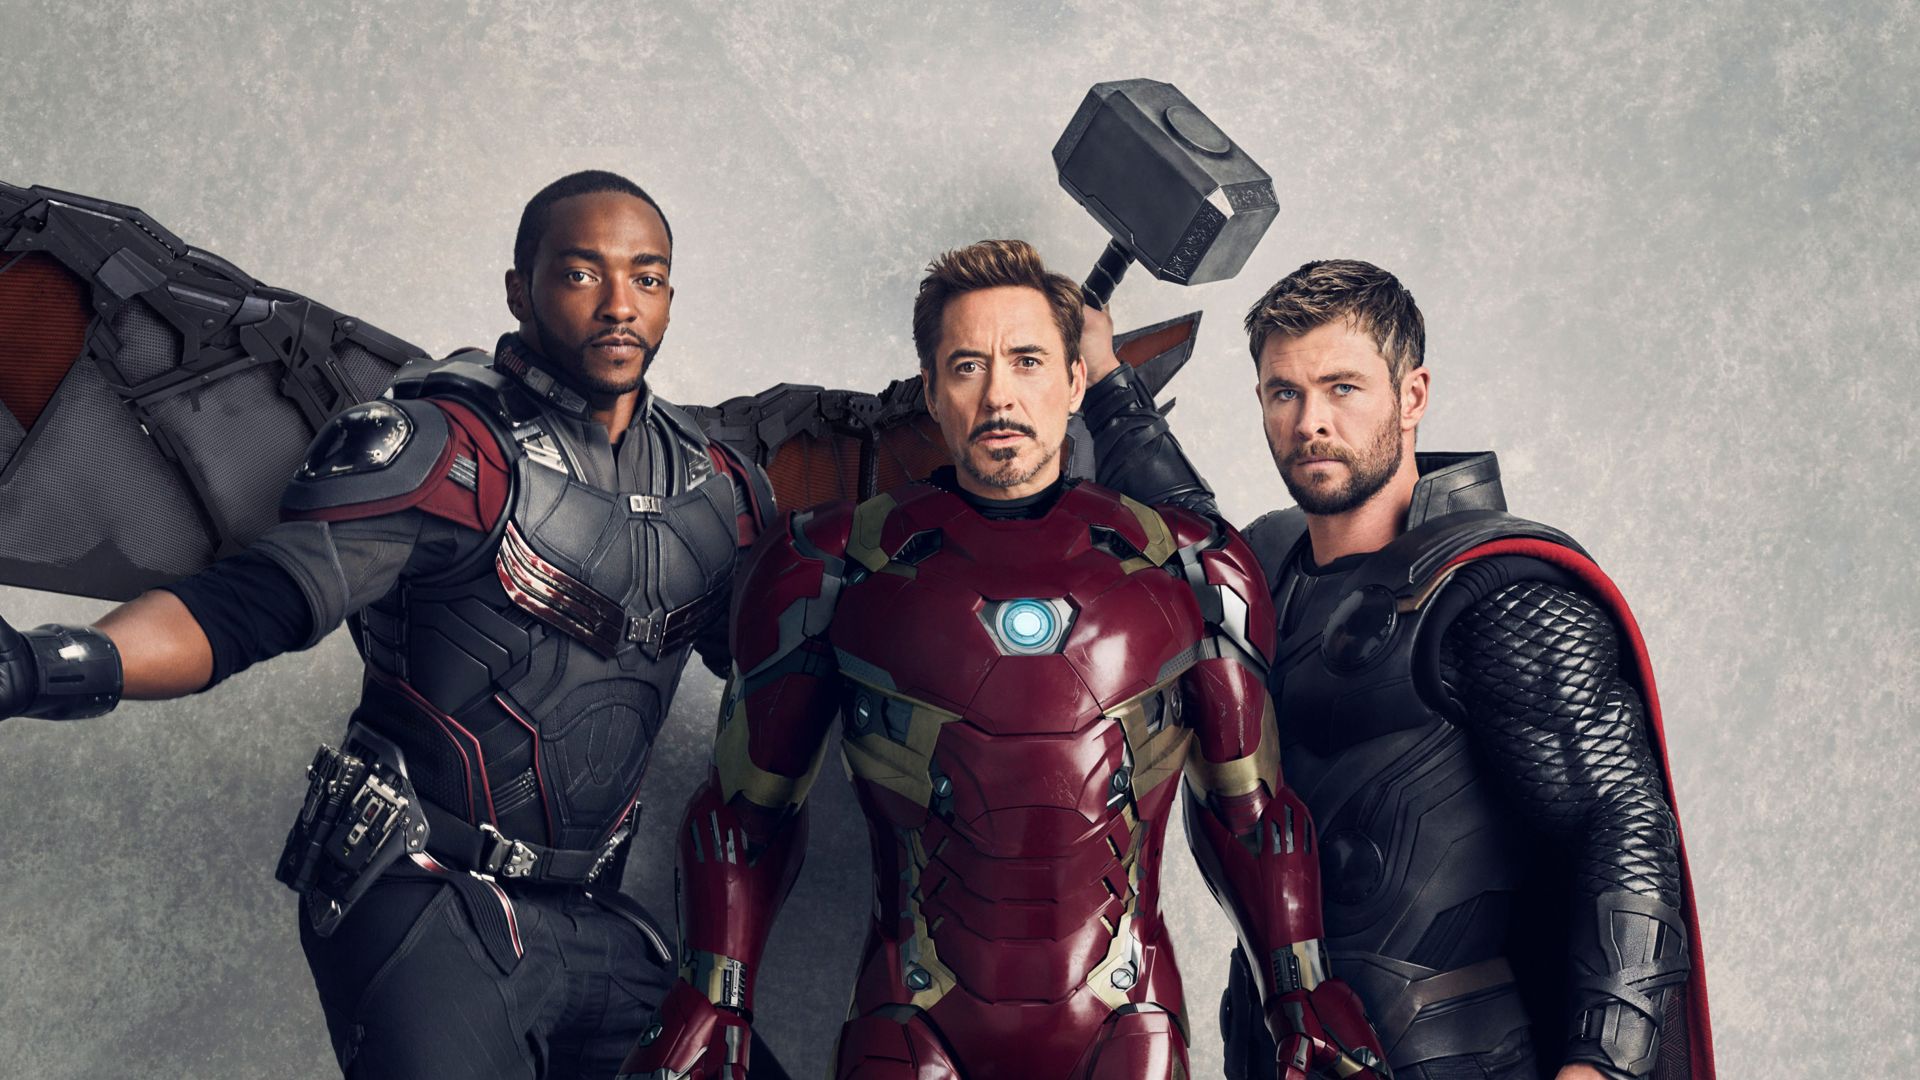 Мстители: Война бесконечности. Часть 1, Avengers: Infinity War, Falcon, Iron Man, Thor, Anthony Mackie, Robert Downey Jr., Chris Hemsworth, 5k (horizontal)